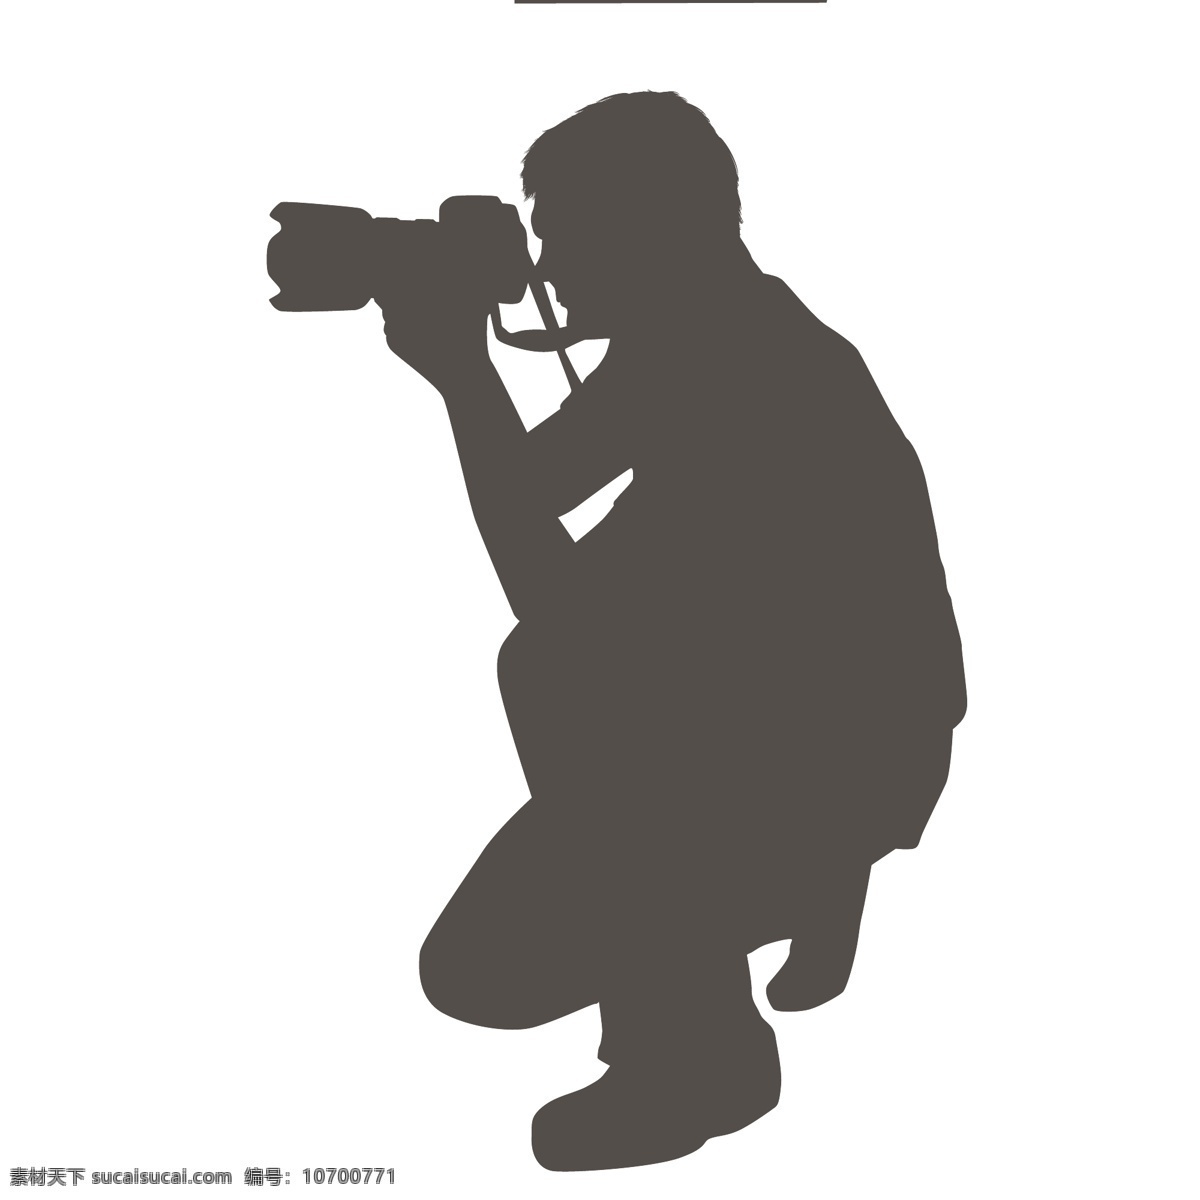 摄影人物剪影 人物 剪影 相机 摄影素材 手绘 摄影记者 拍摄 矢量人物 人物图库 职业人物